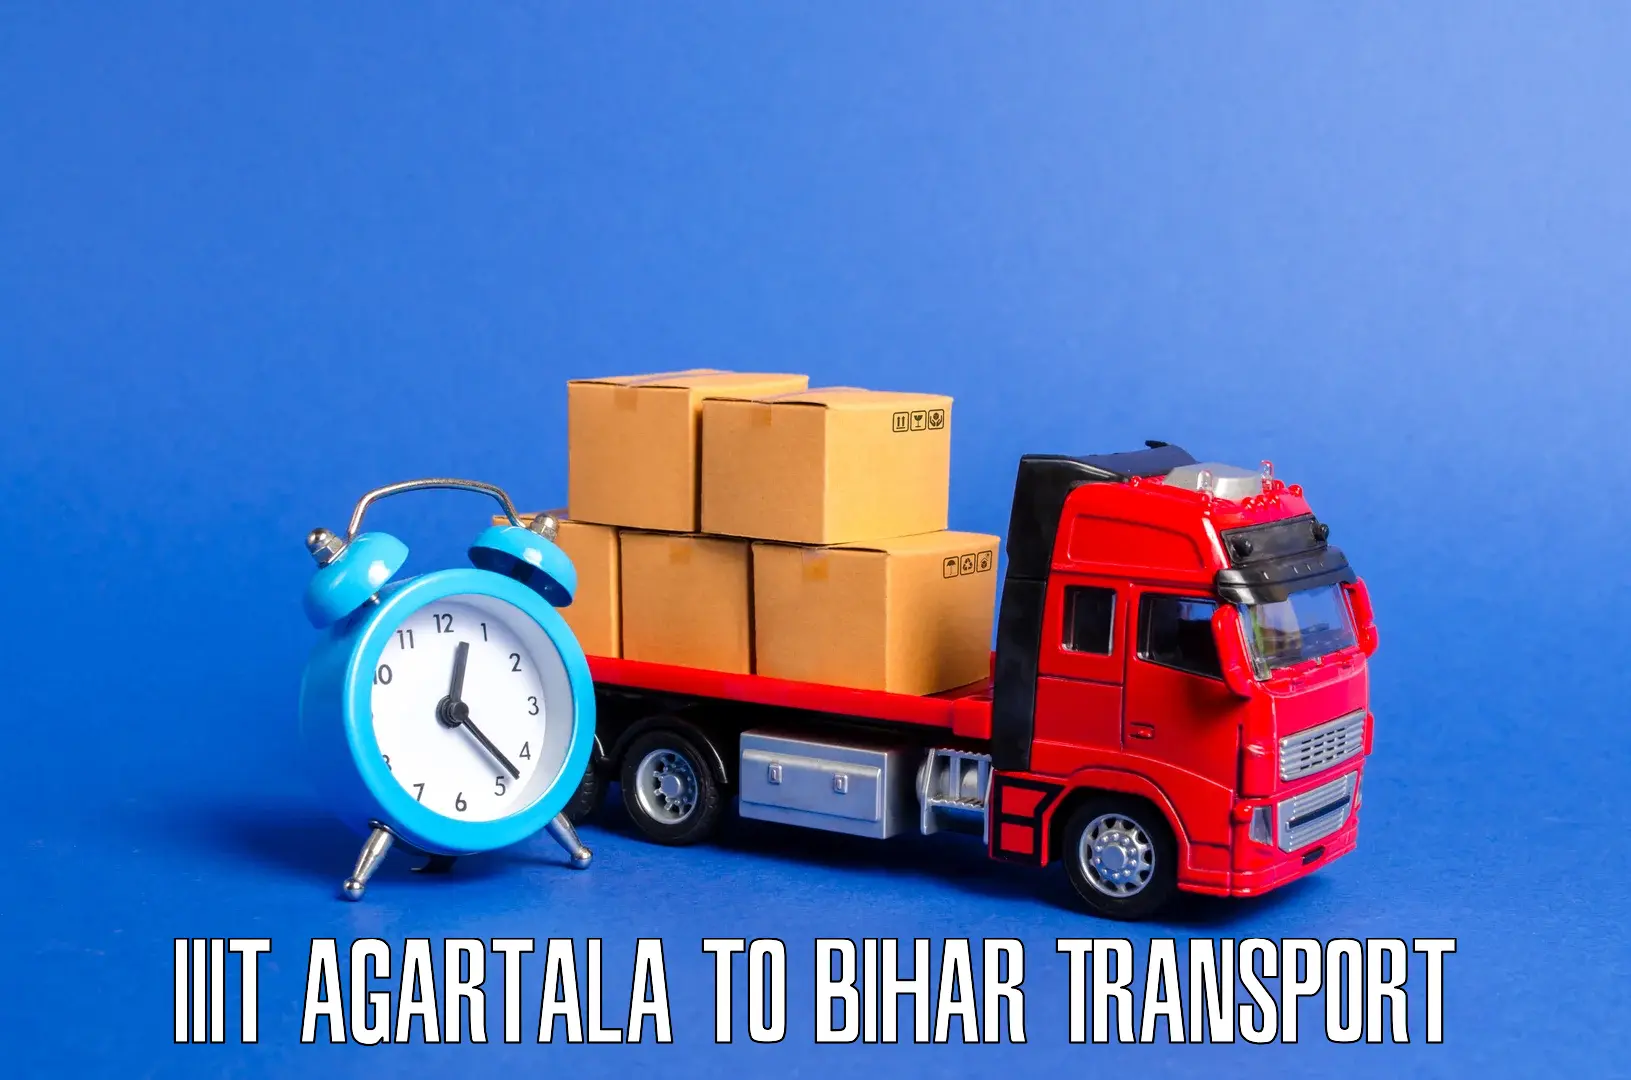 Cargo train transport services IIIT Agartala to Kamtaul